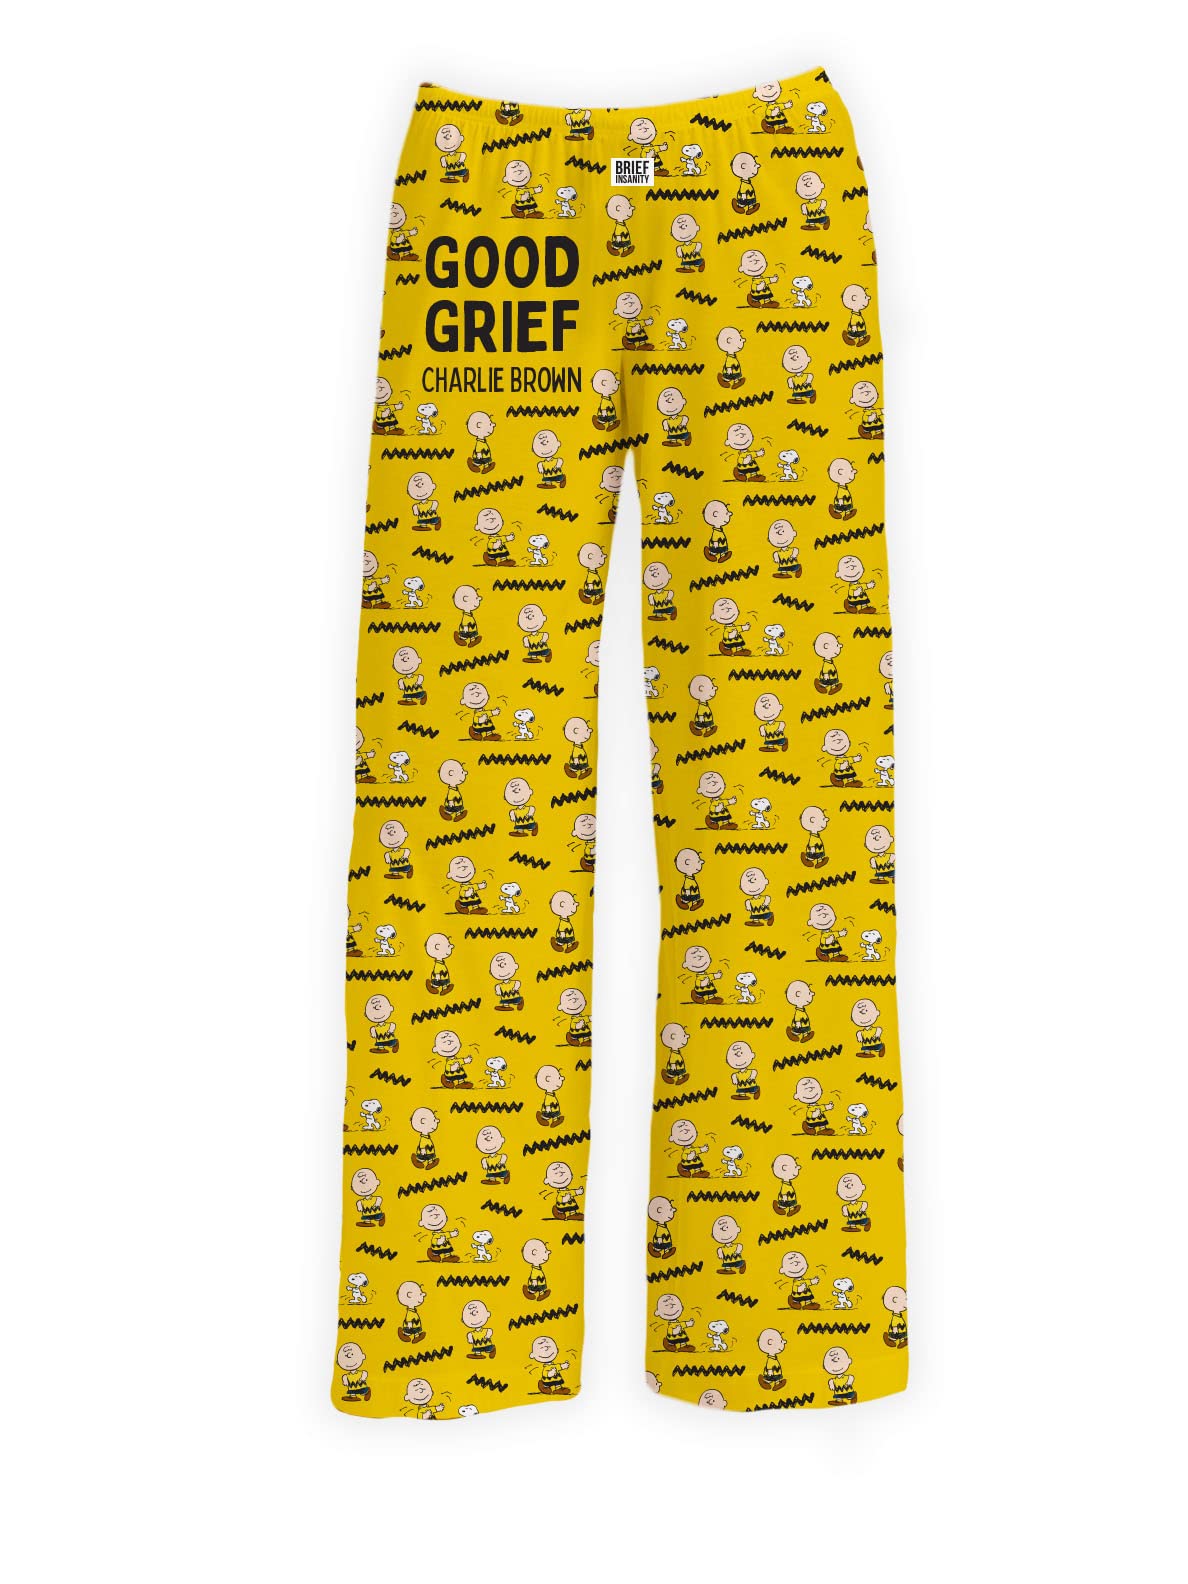 BRIEF INSANITY Peanuts Good Grief Charlie Brown Pajama Pants